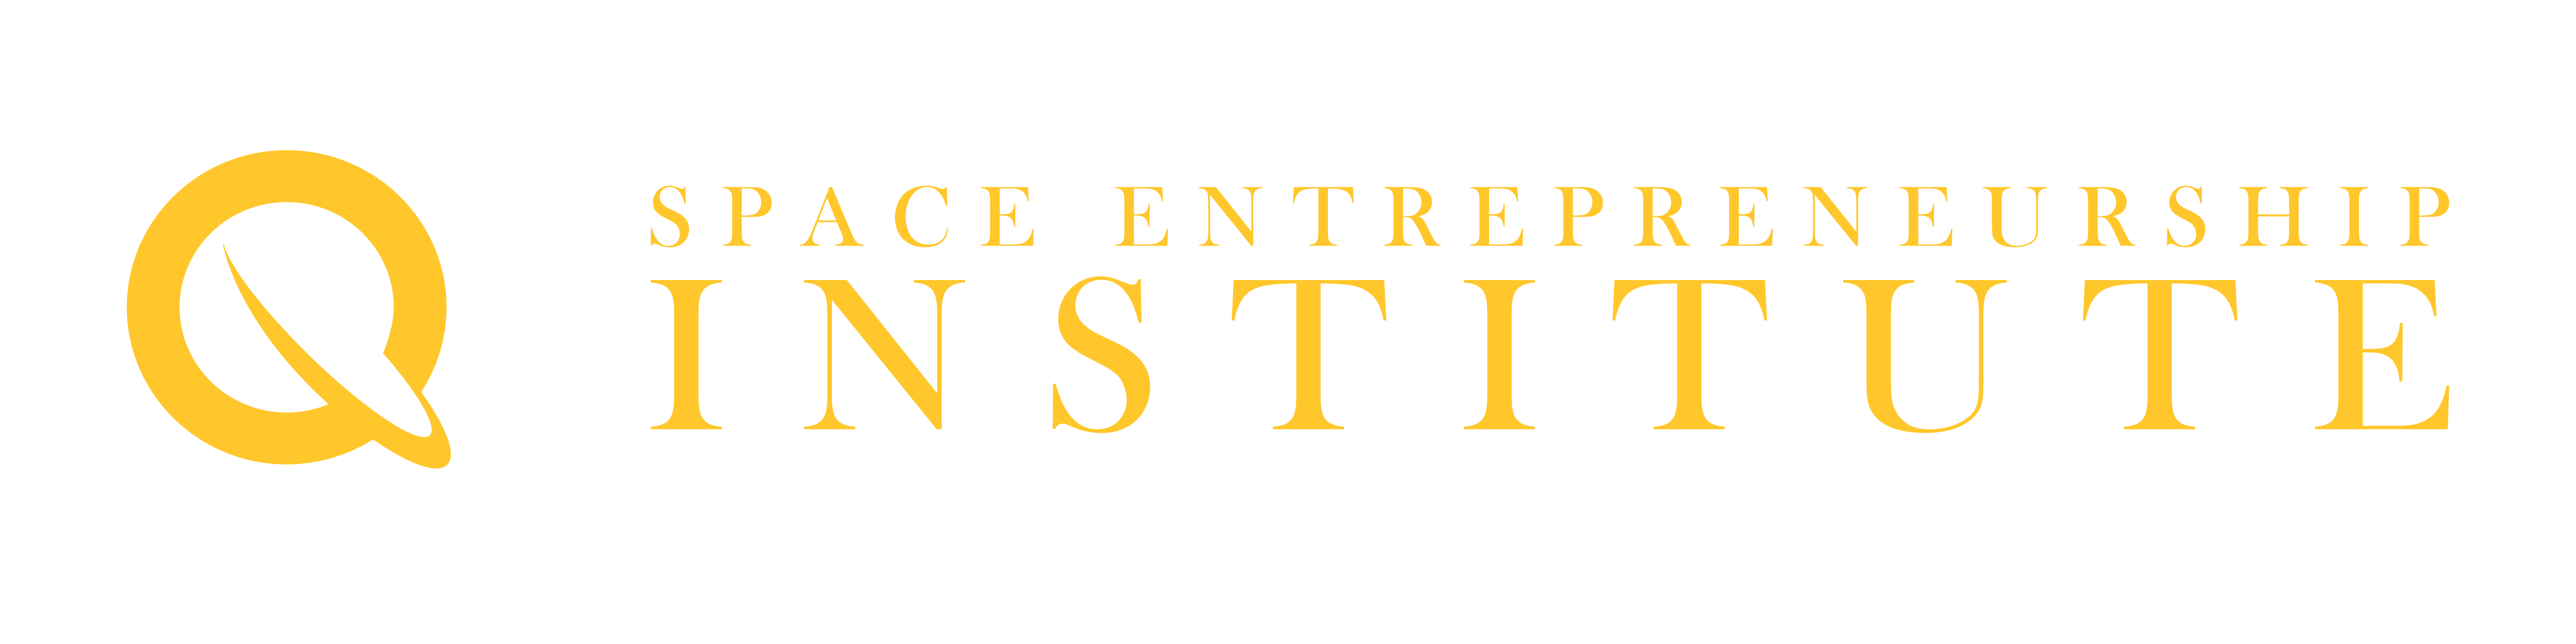 Space Entrepreneurship Institute